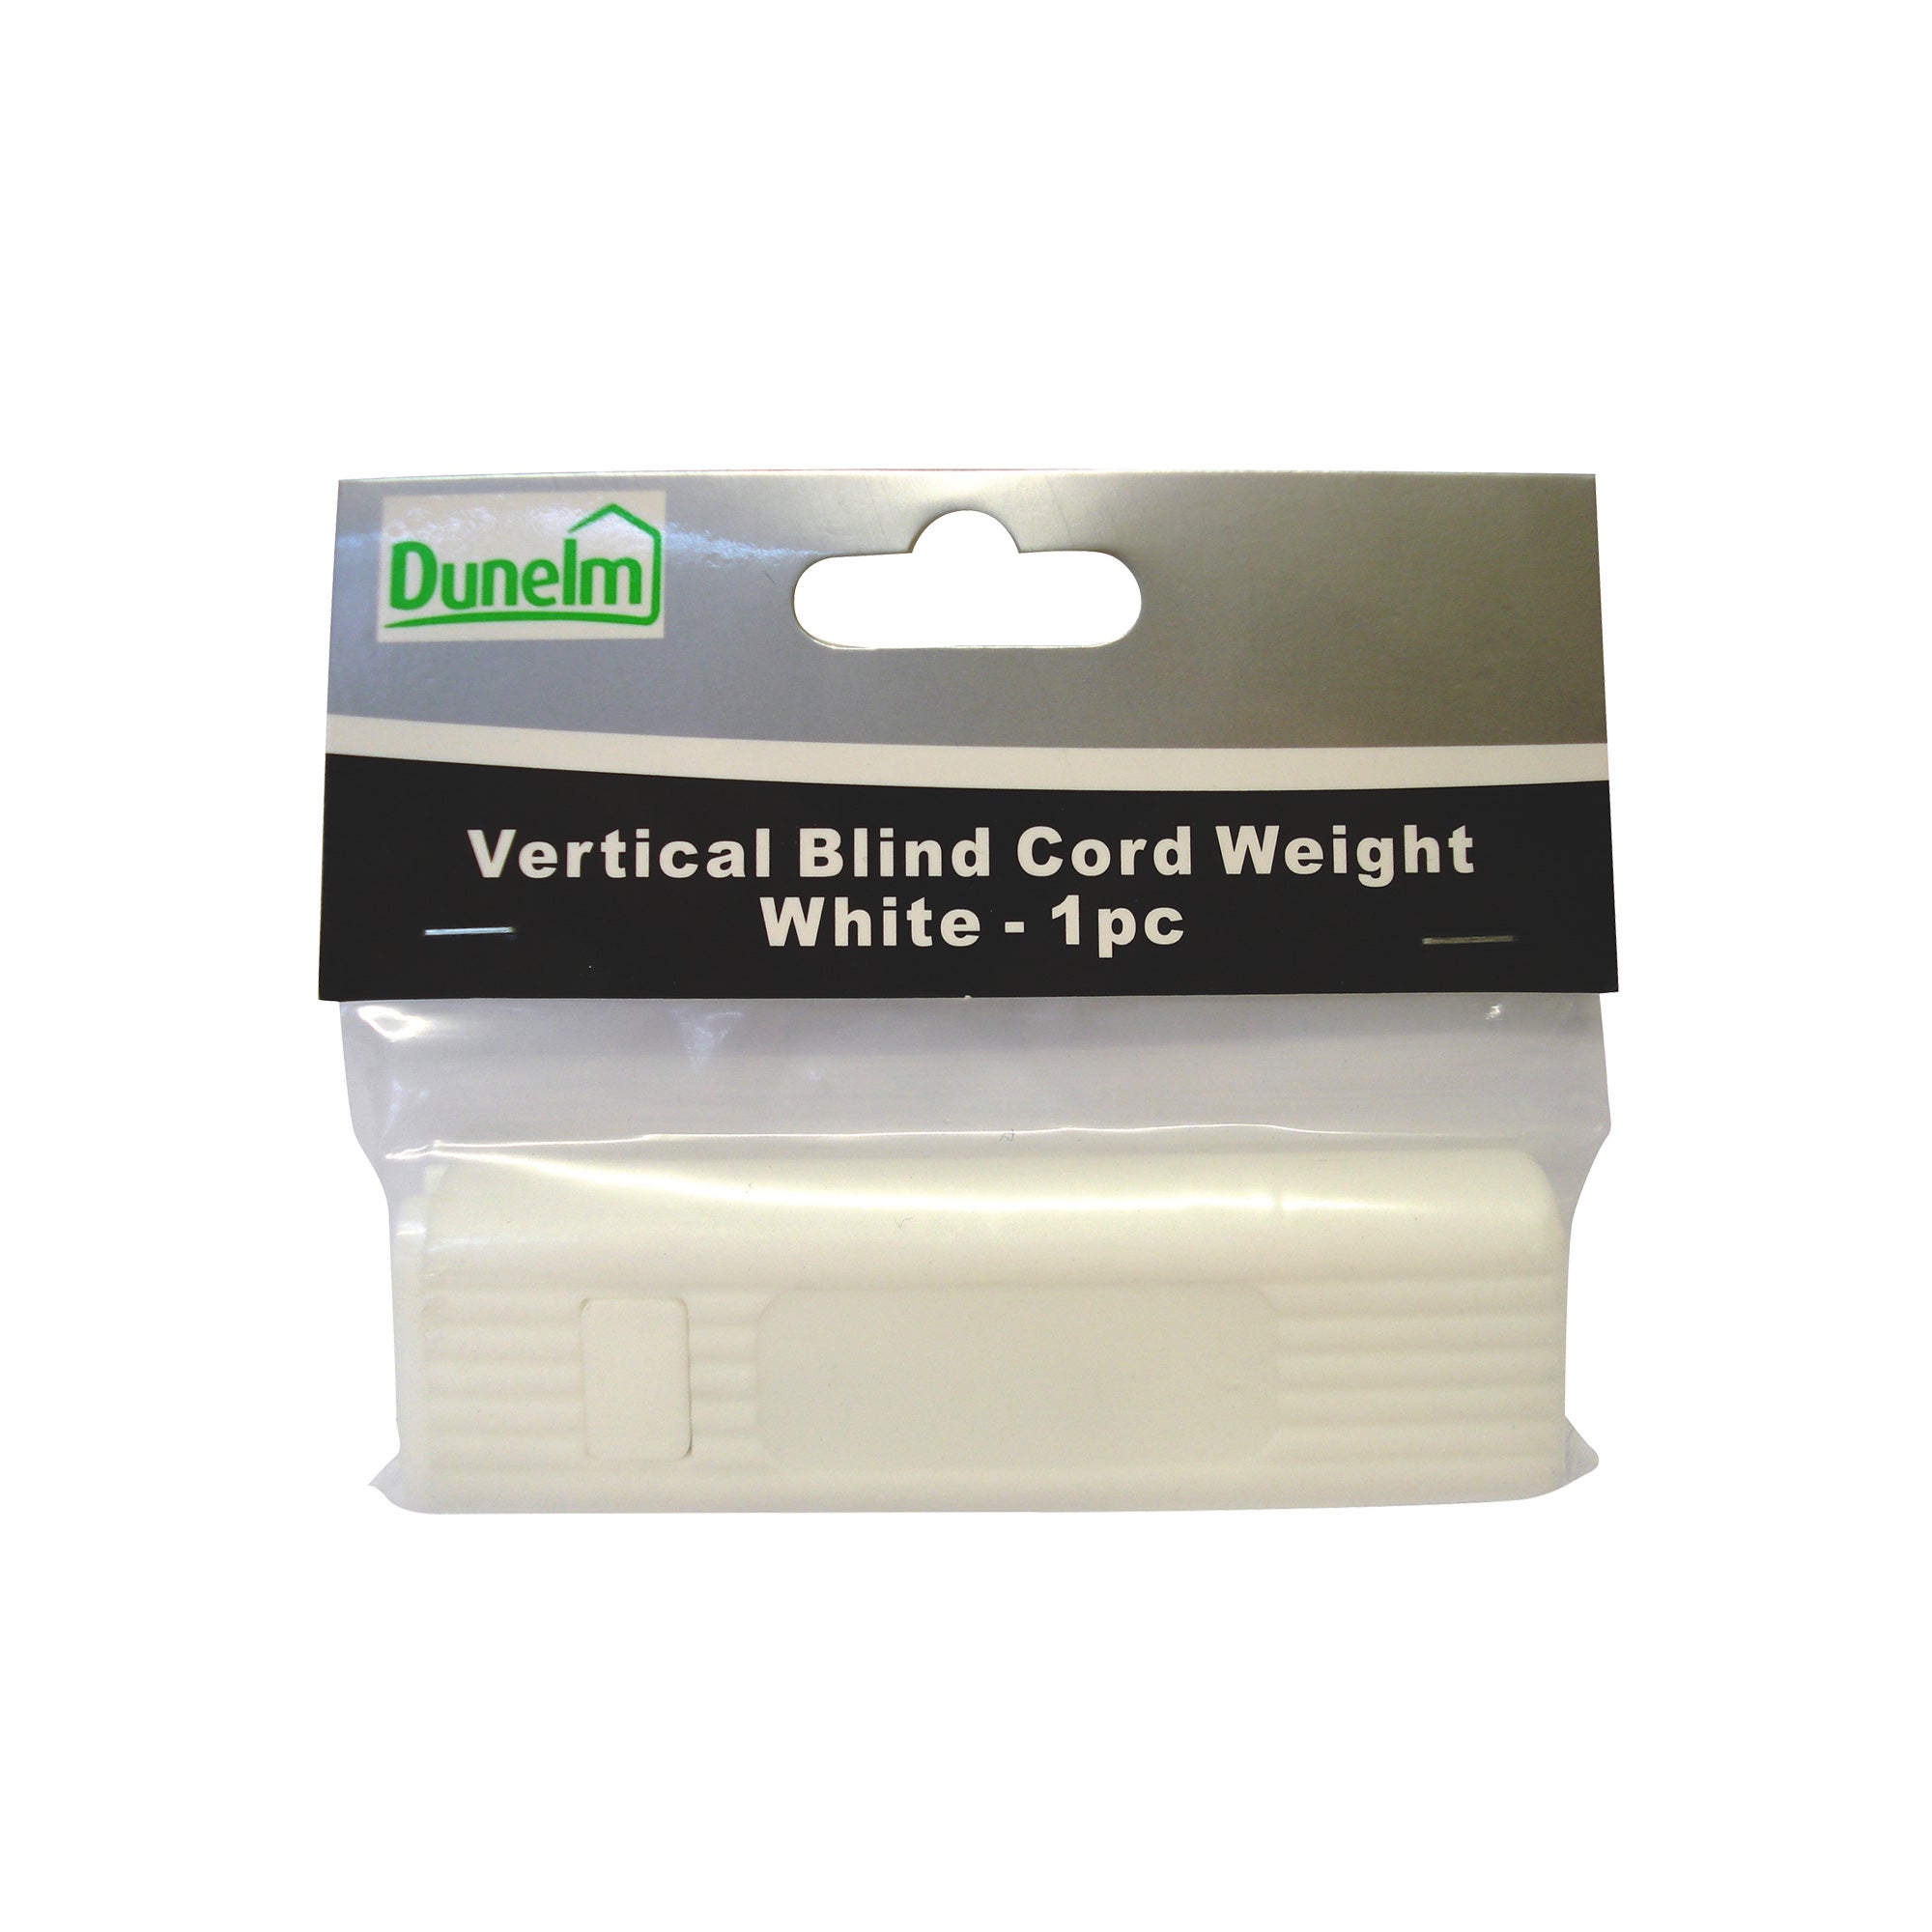 Vertical Blind Cord Weight | Dunelm